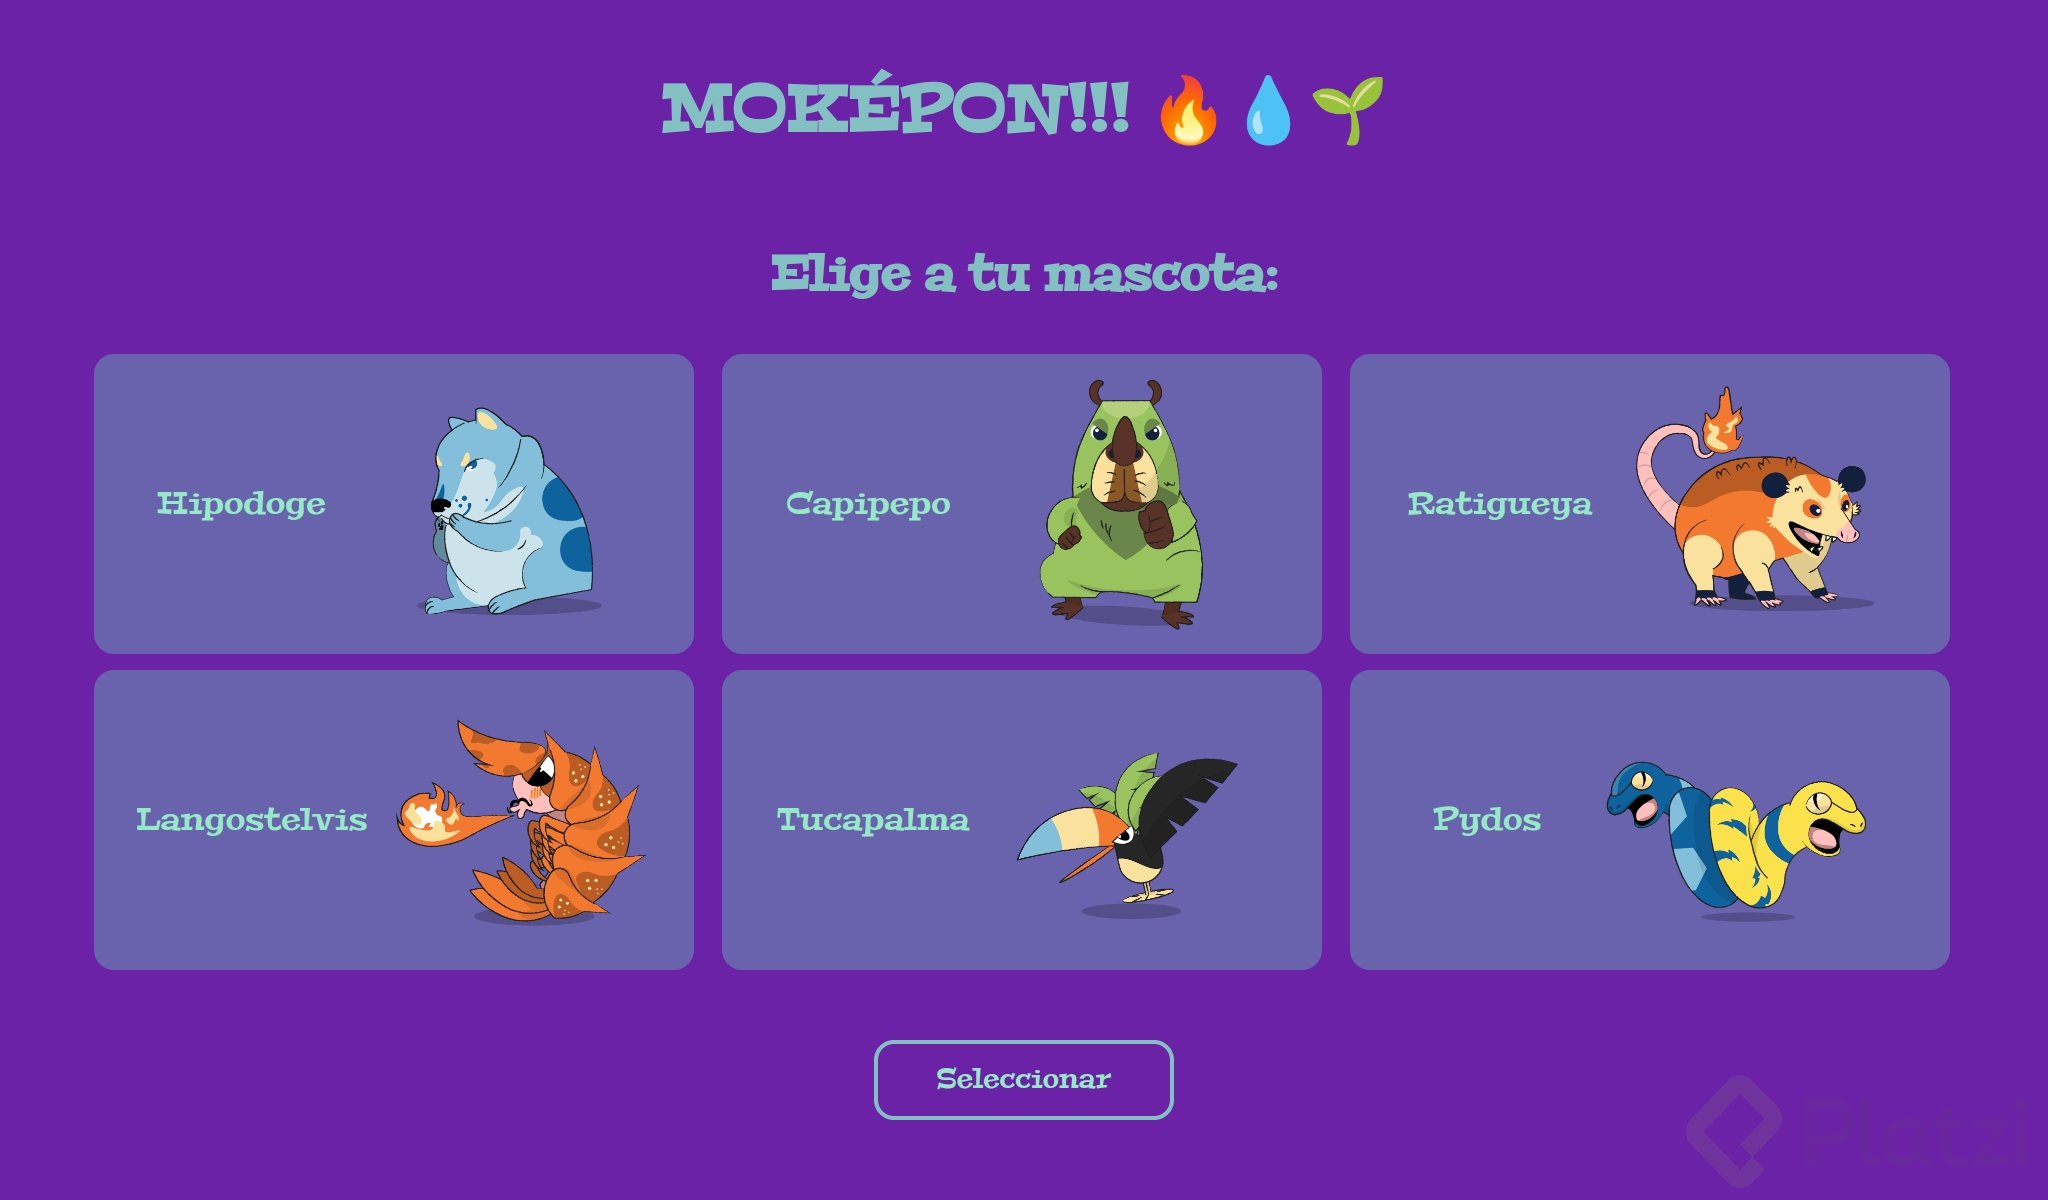 selec-mascota-screenshot.png